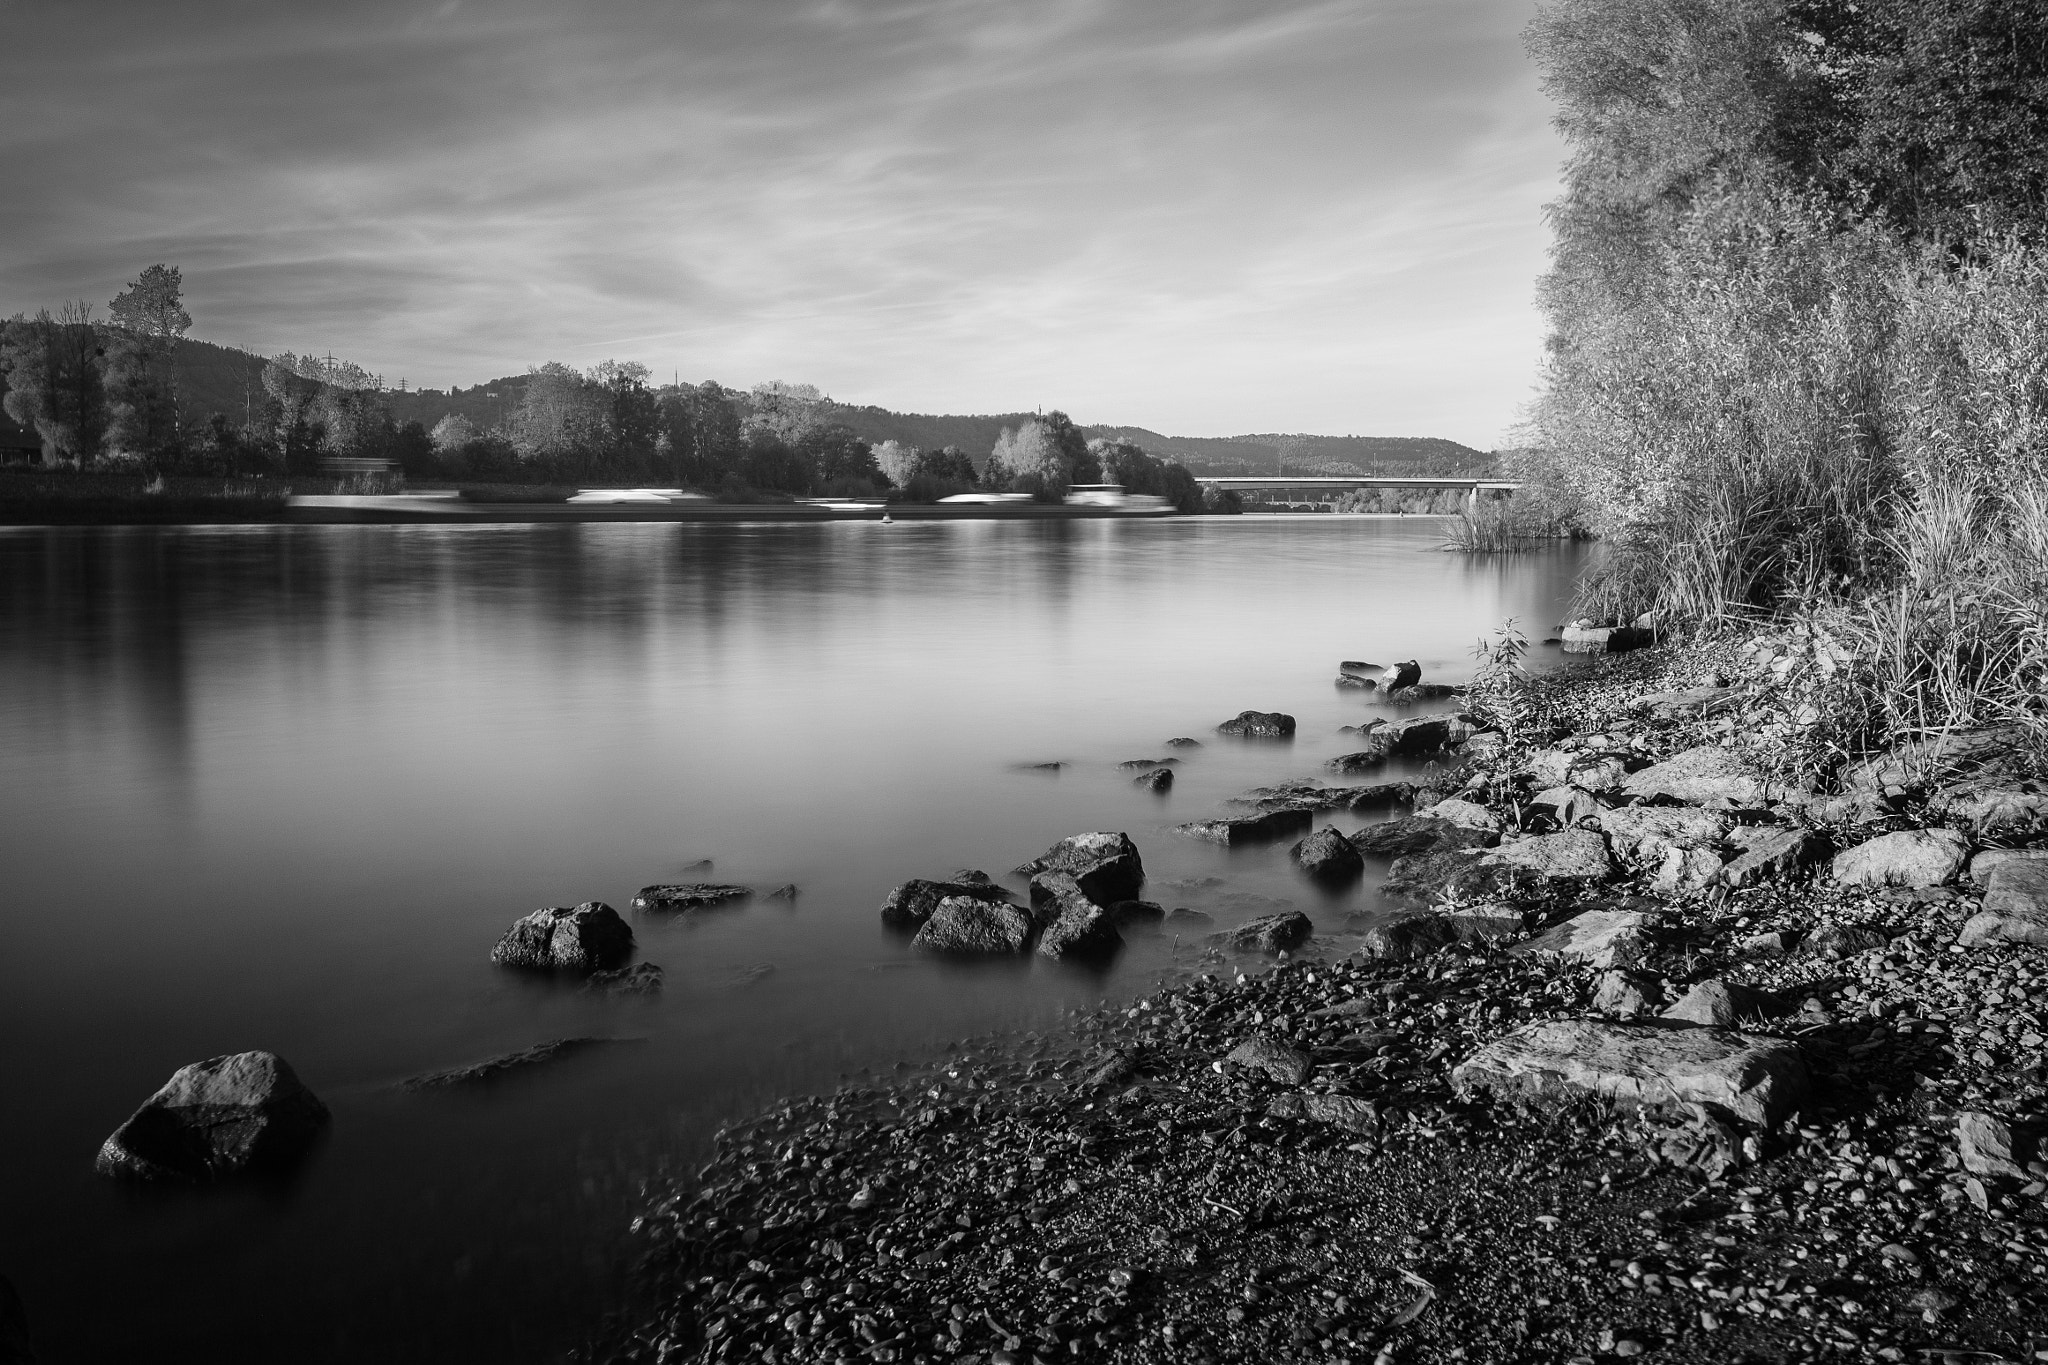 Canon EOS 6D sample photo. Evening river photography